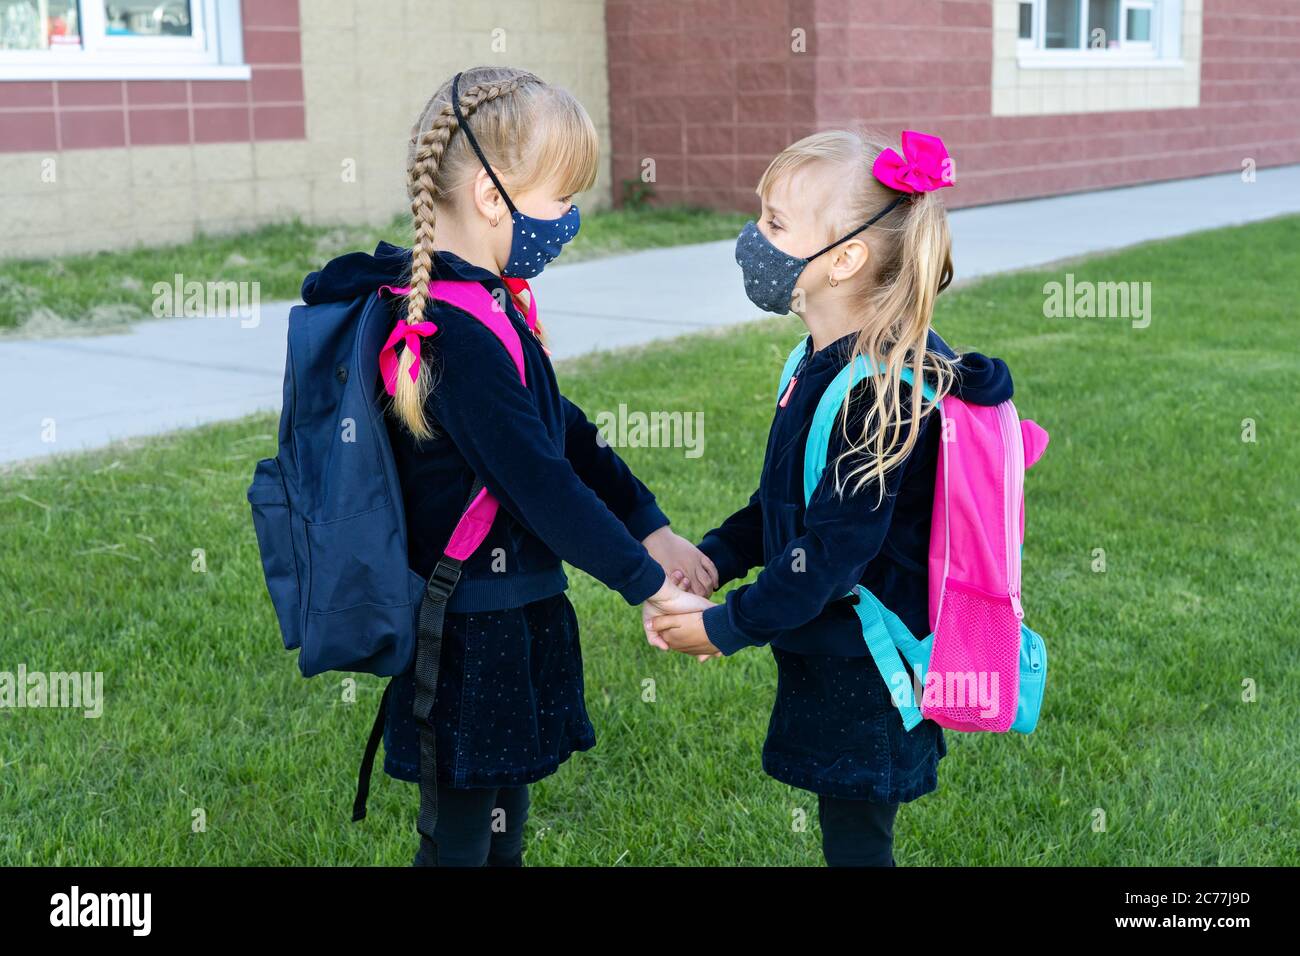 Sicherheit zurück zur Schule Konzept, Tragen von Maske für Schüler. Zwei junge Schwestern gehen zur Schule. Freundschaft, Familie. Stockfoto